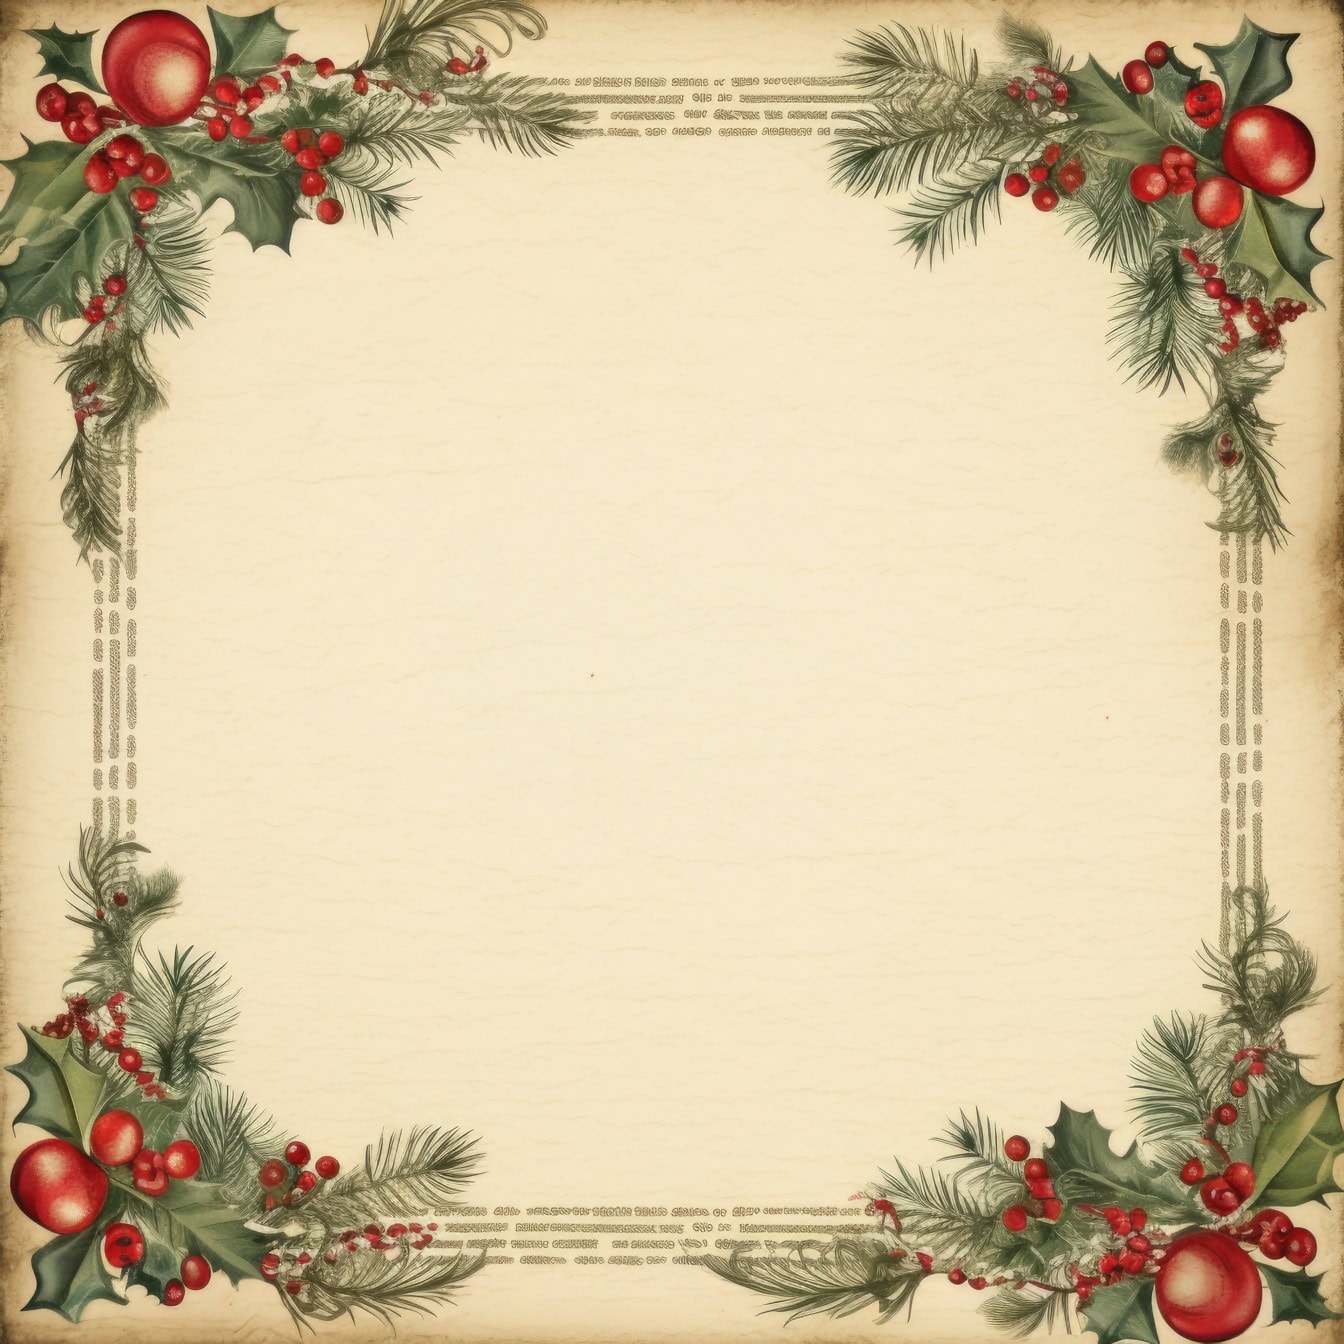 Tradicionalni predložak novogodišnje čestitke u retro stilu s kvadratnim okvirom s božikovinom s bobicama